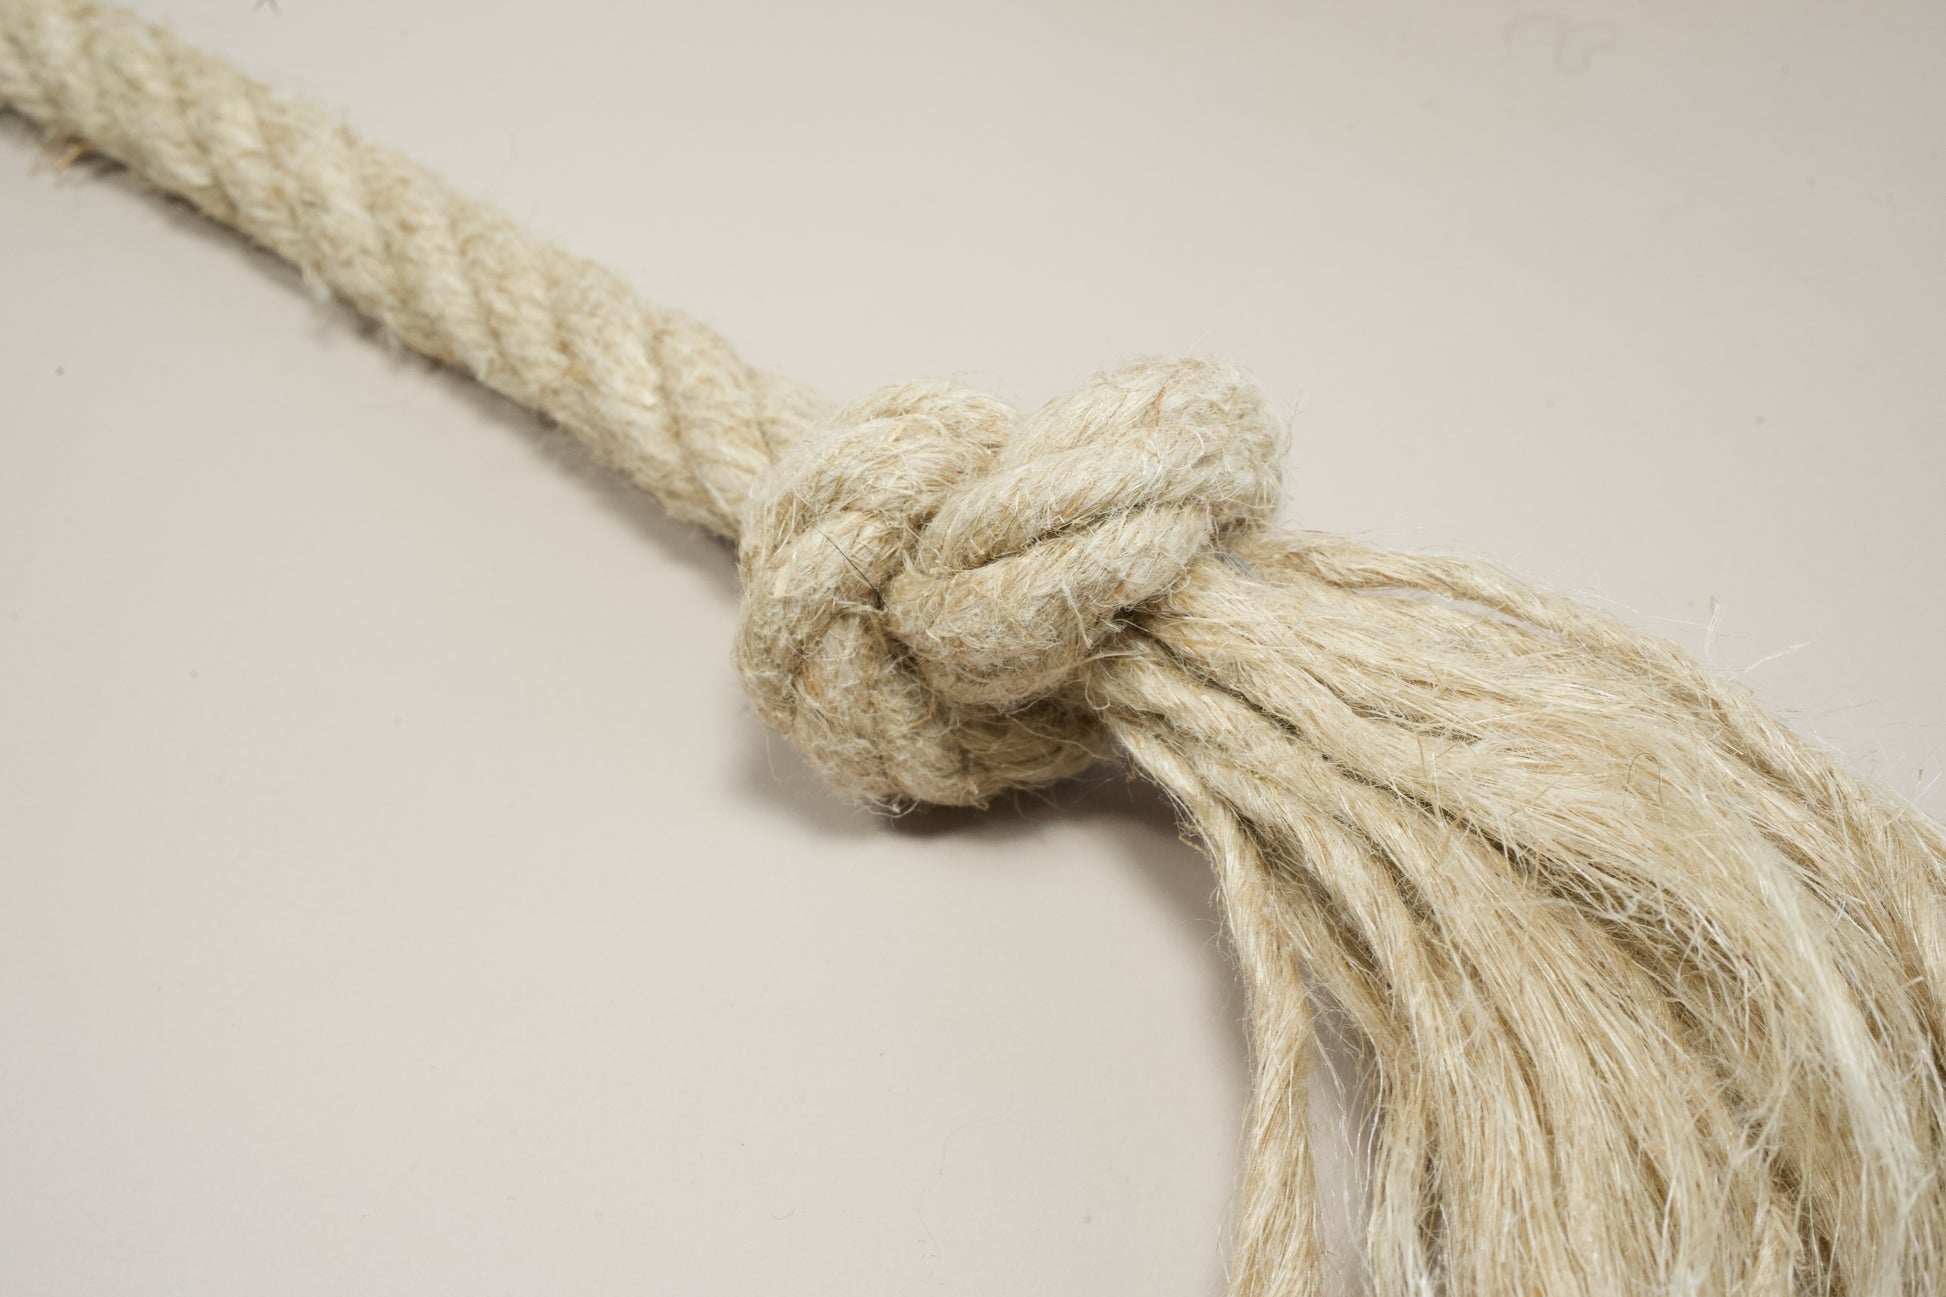 Close-up view of hemp rope dog toy knot. | Vue rapprochée du noeud du jouet pour chien en corde de chanvre.